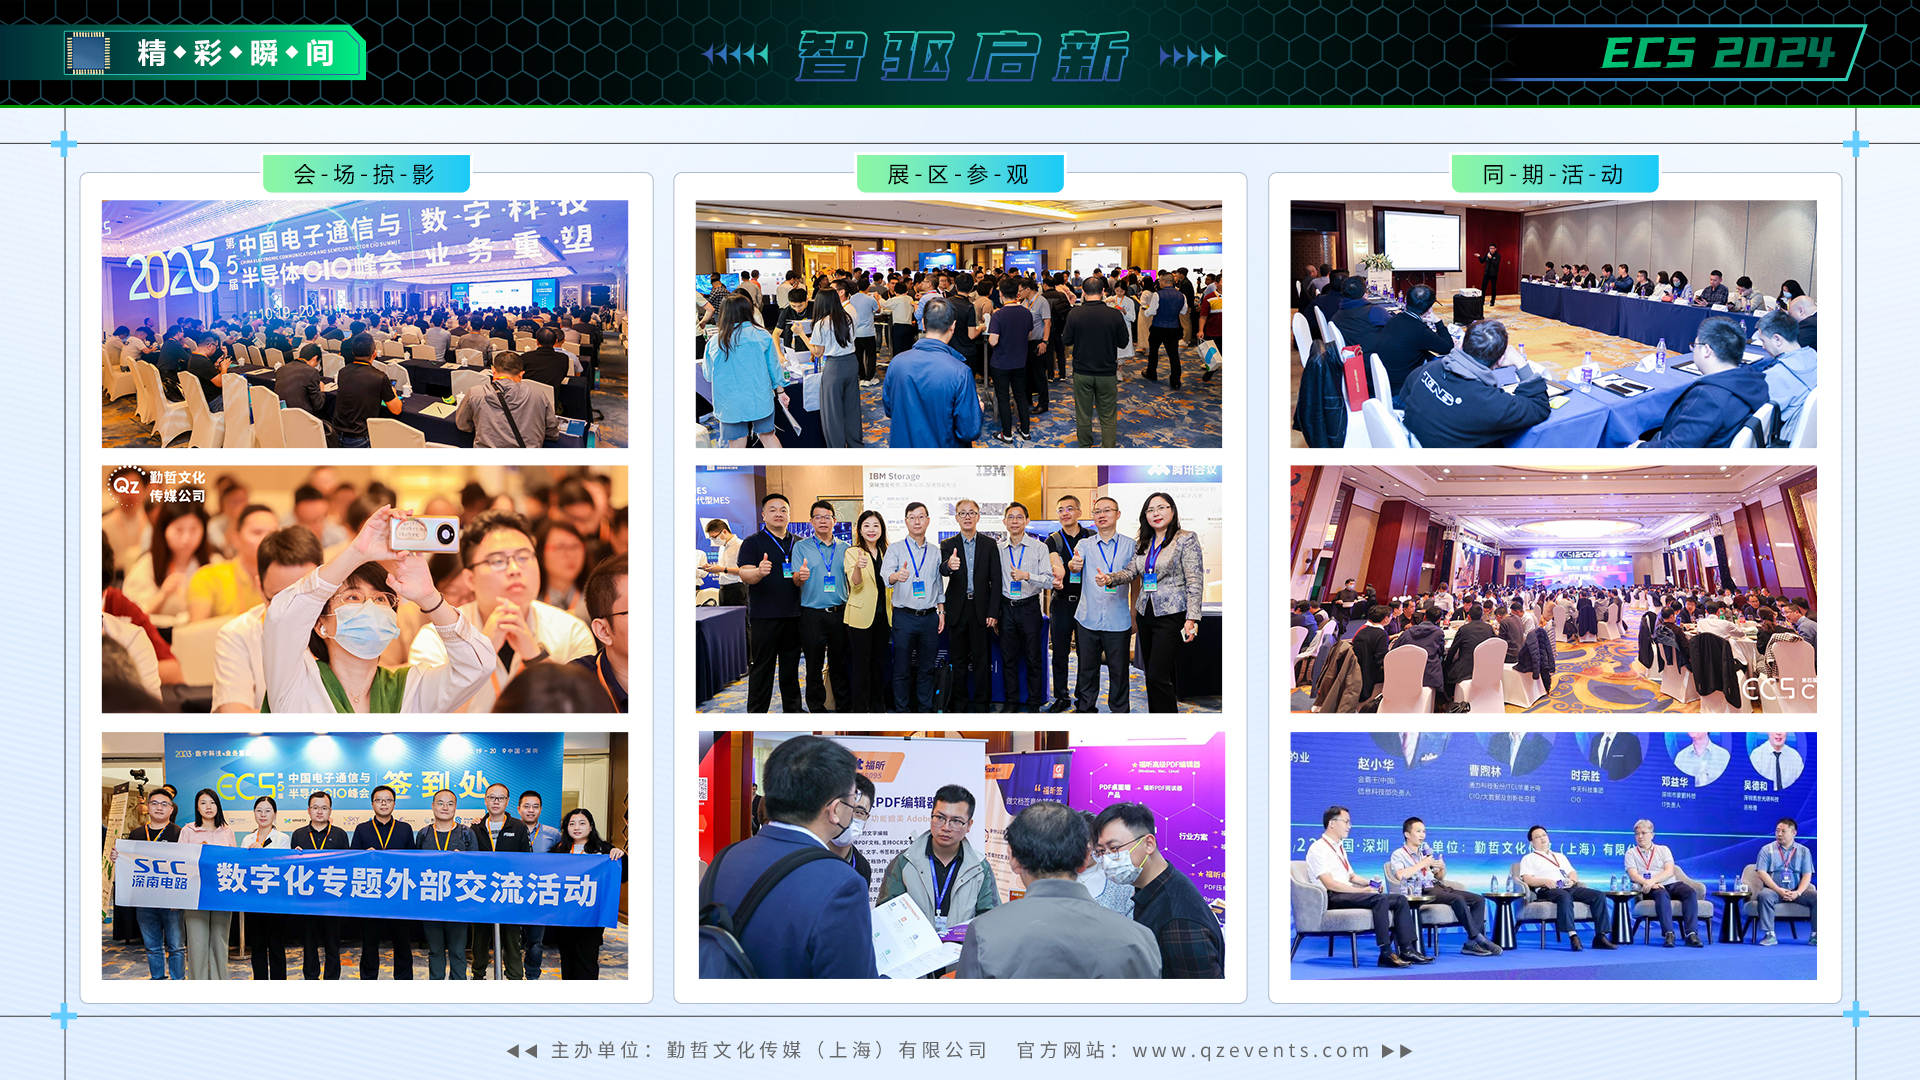 ECS 2024第六届中国电子通信与半导体CIO峰会